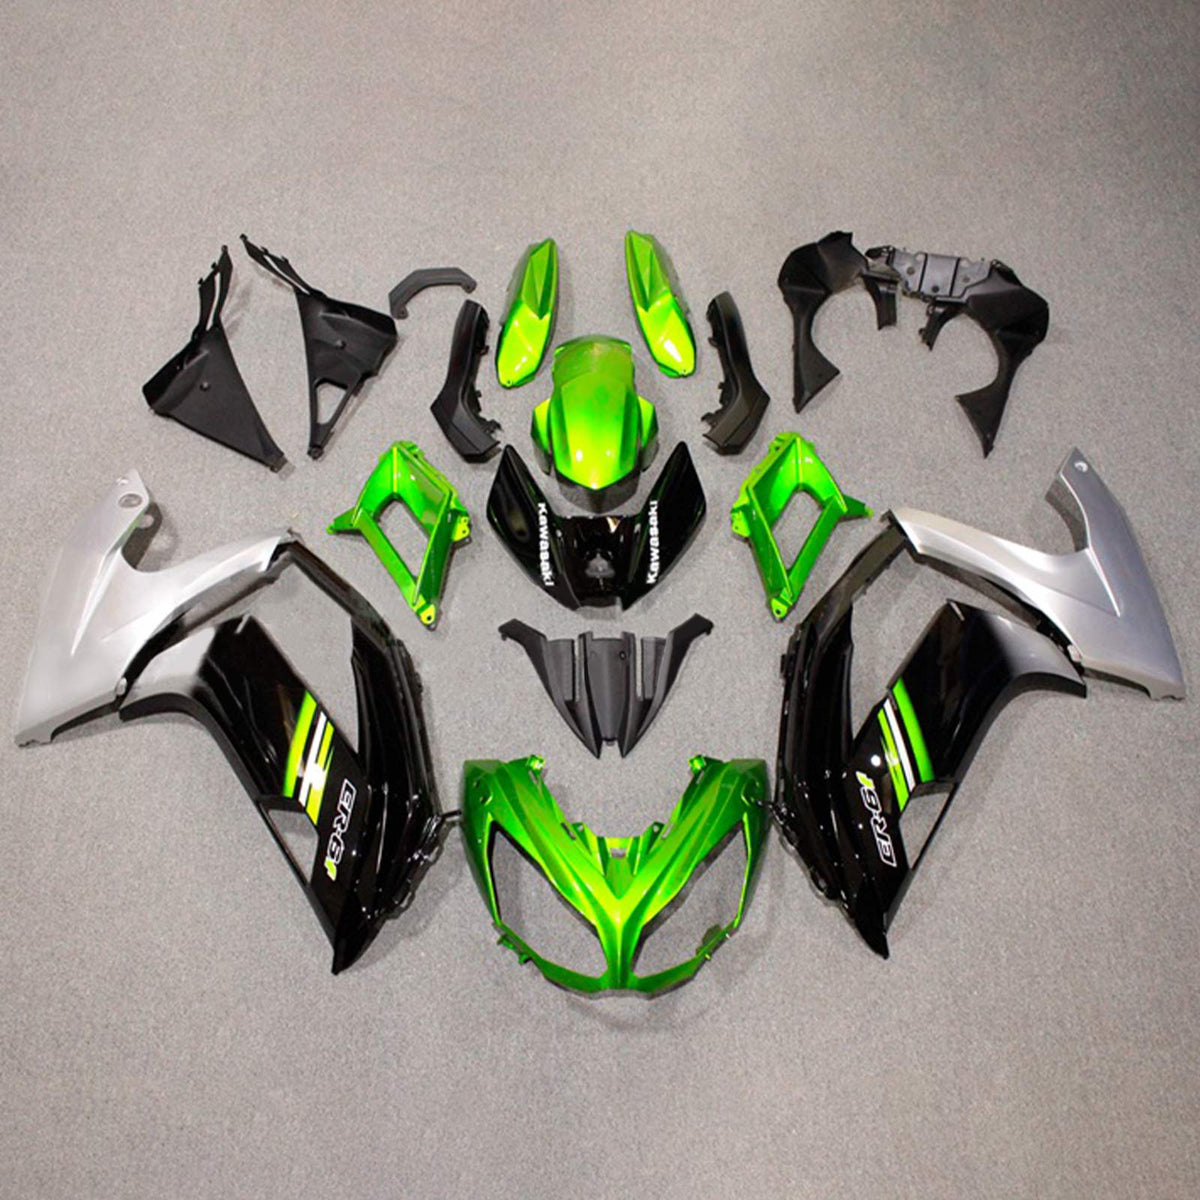 Kit carena Amotopart 2012-2016 Kawasaki Ninja 650 verde nero